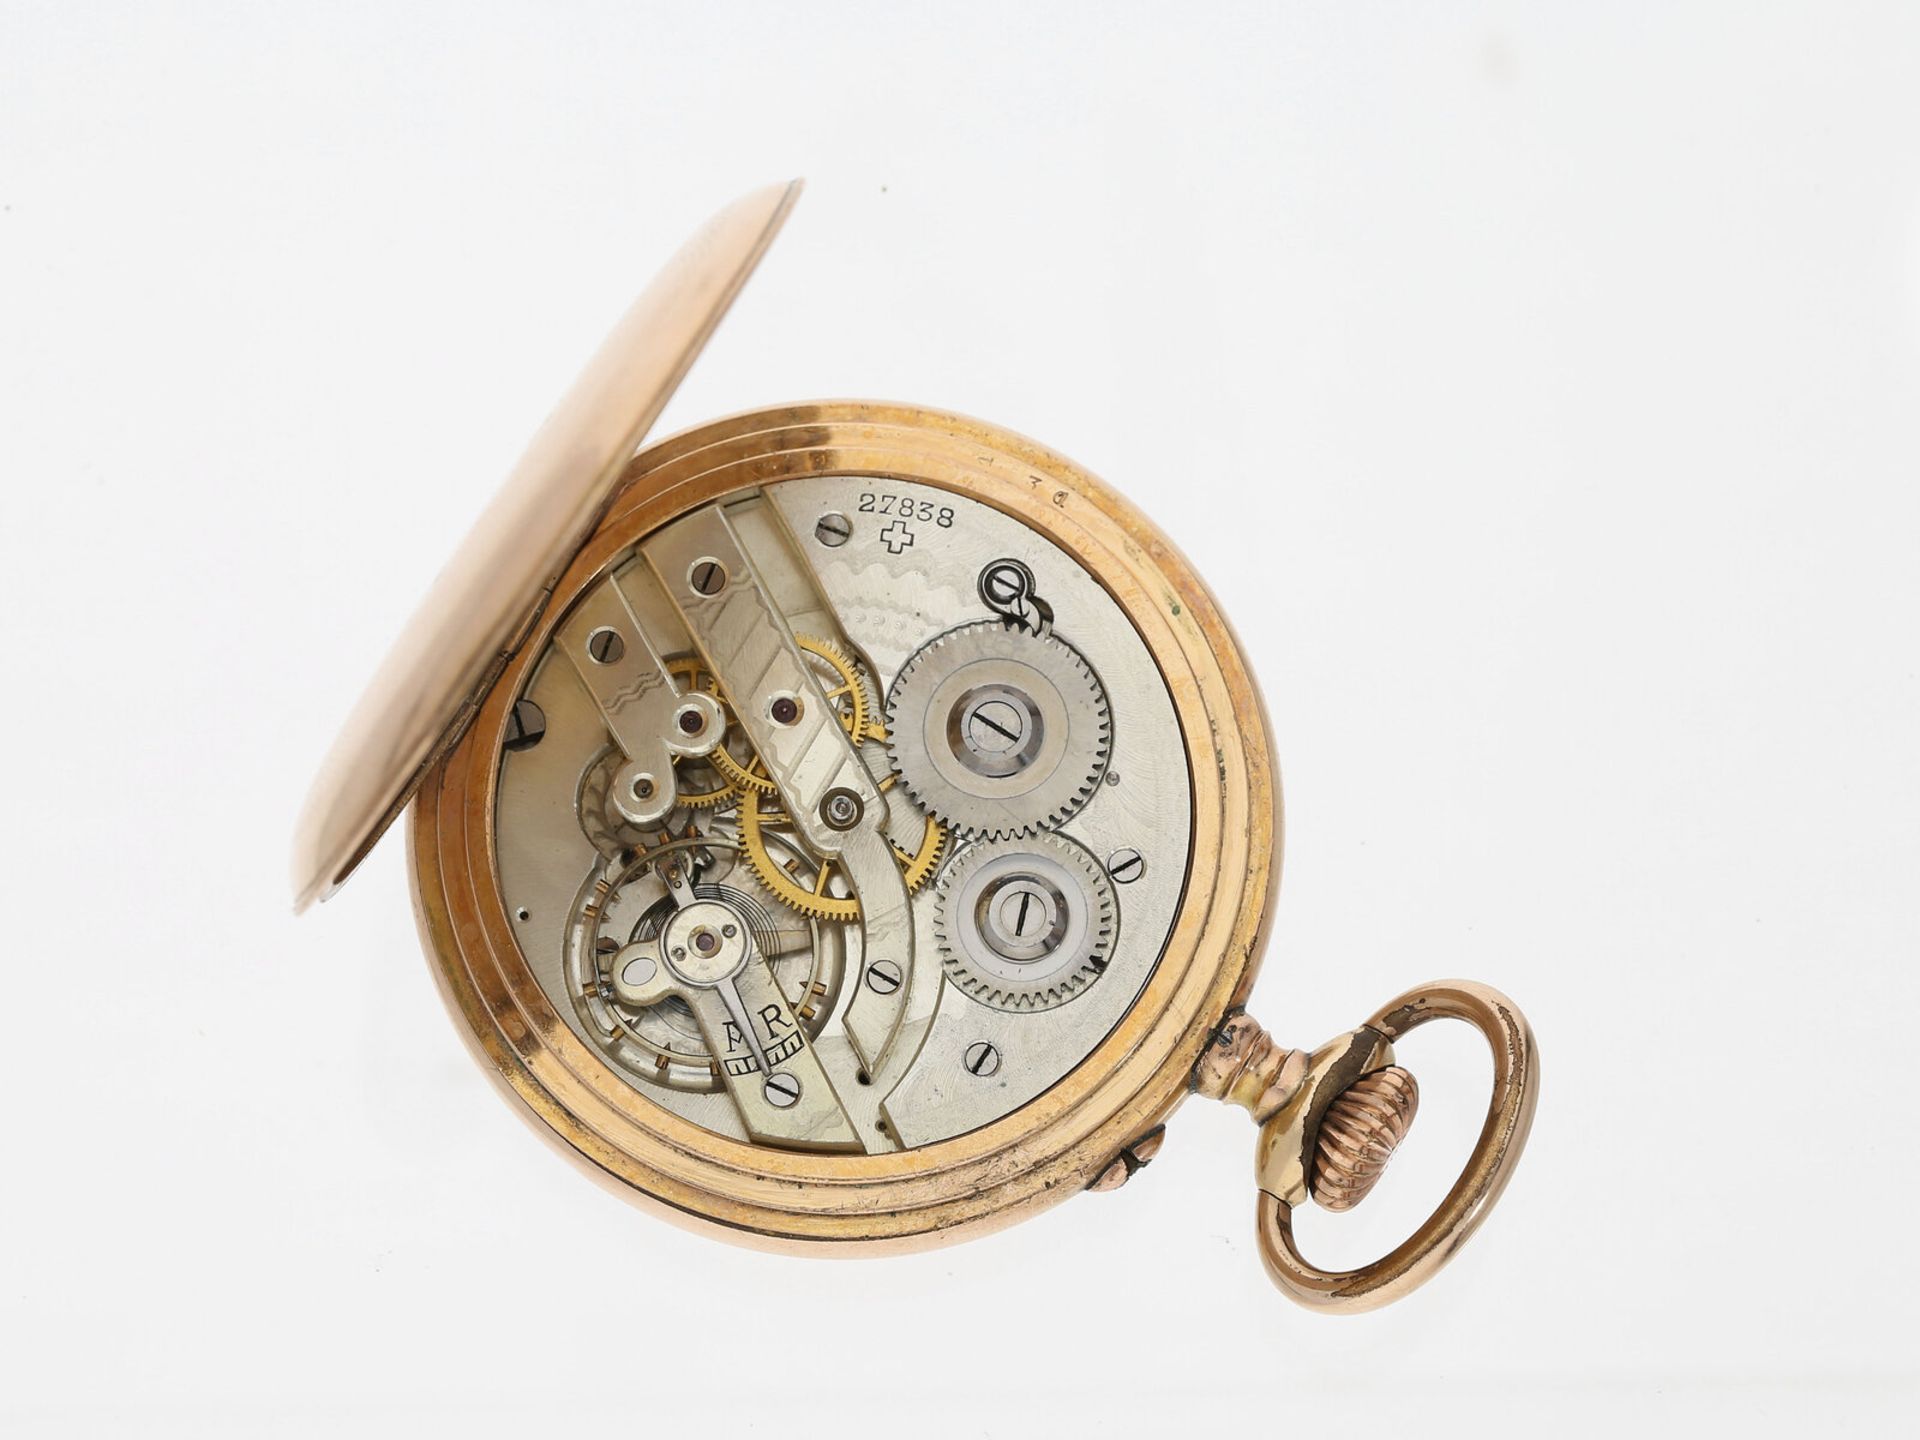 Taschenuhr: technisch interessante Taschenuhr mit springender Stunde und retrograder Minute, Moderni - Bild 3 aus 3